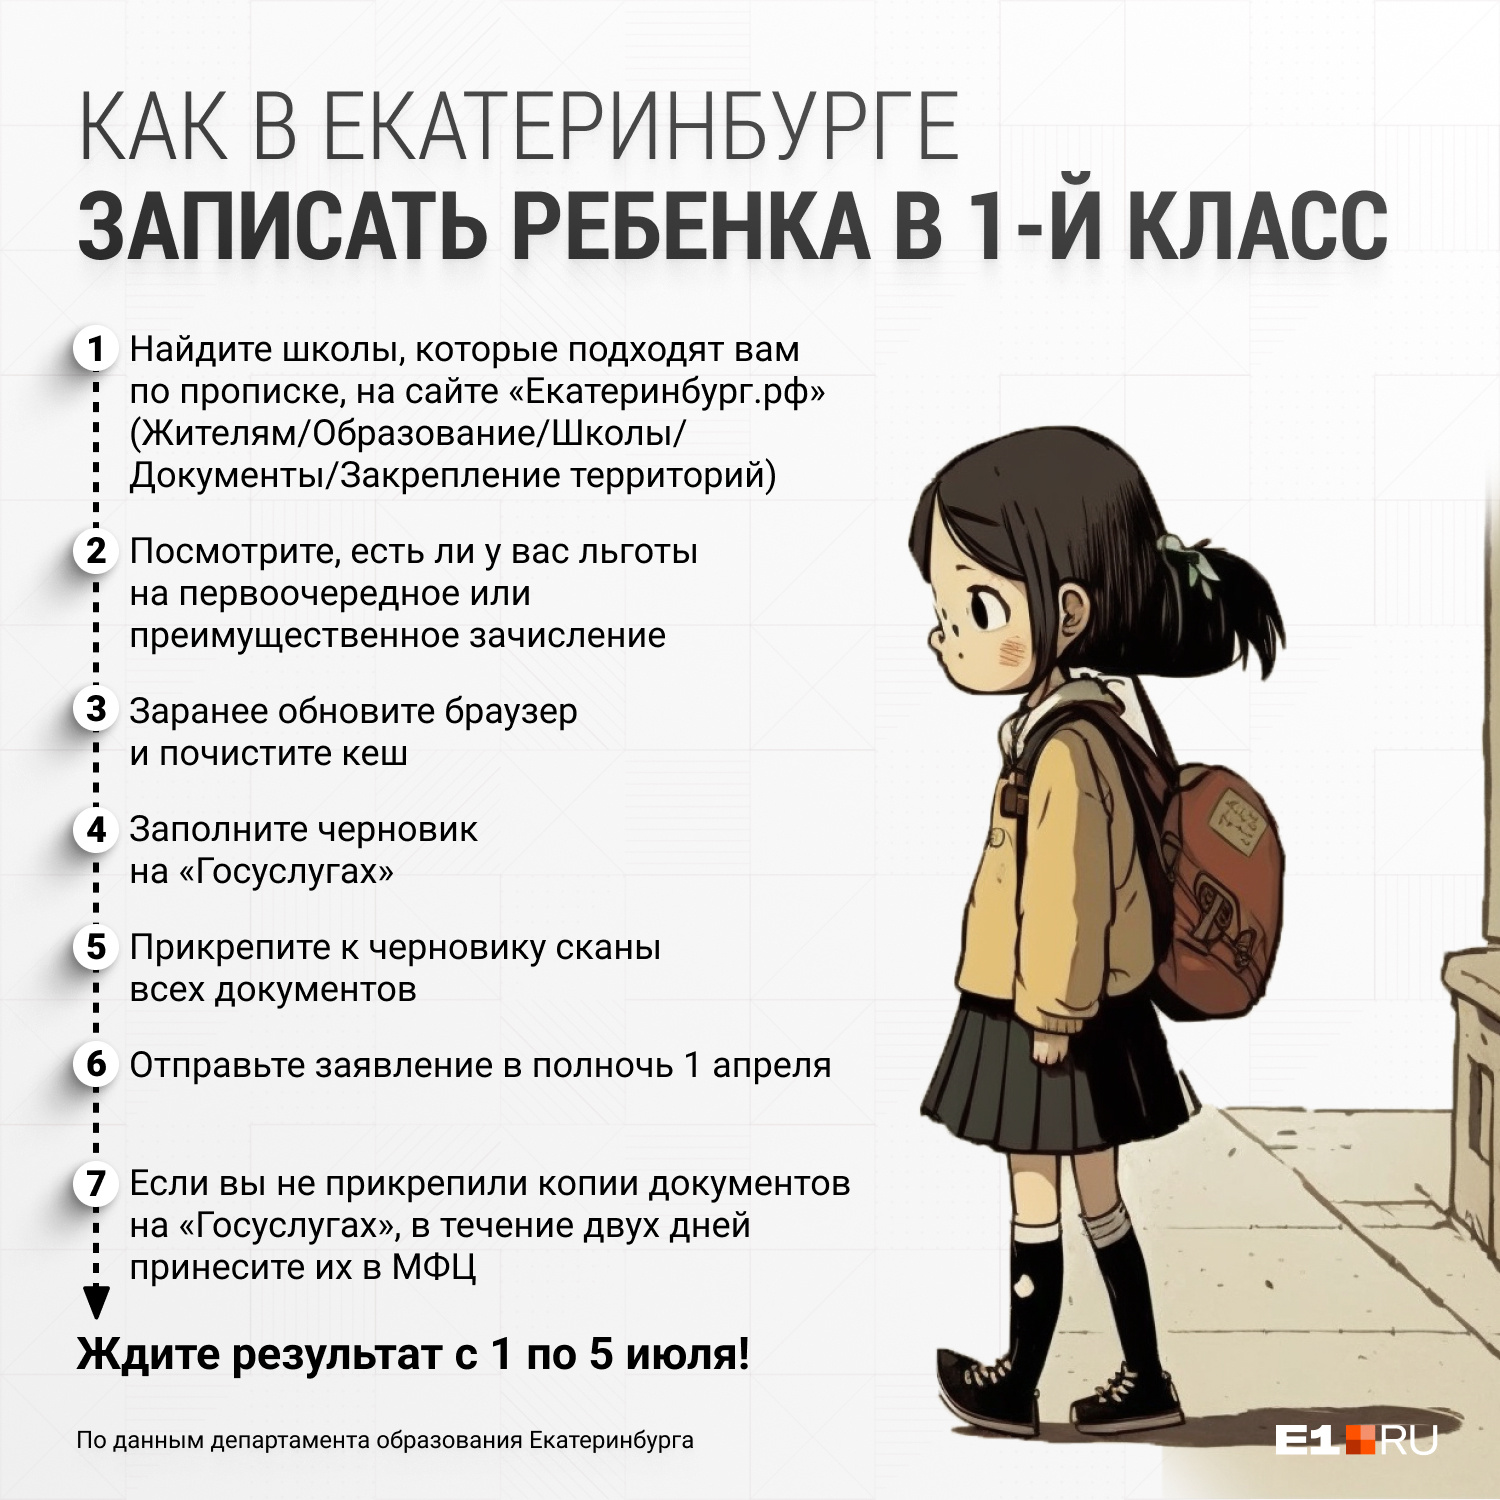 Впереди бессонная ночь! Как записать ребенка в первый класс в Екатеринбурге: подробная инструкция